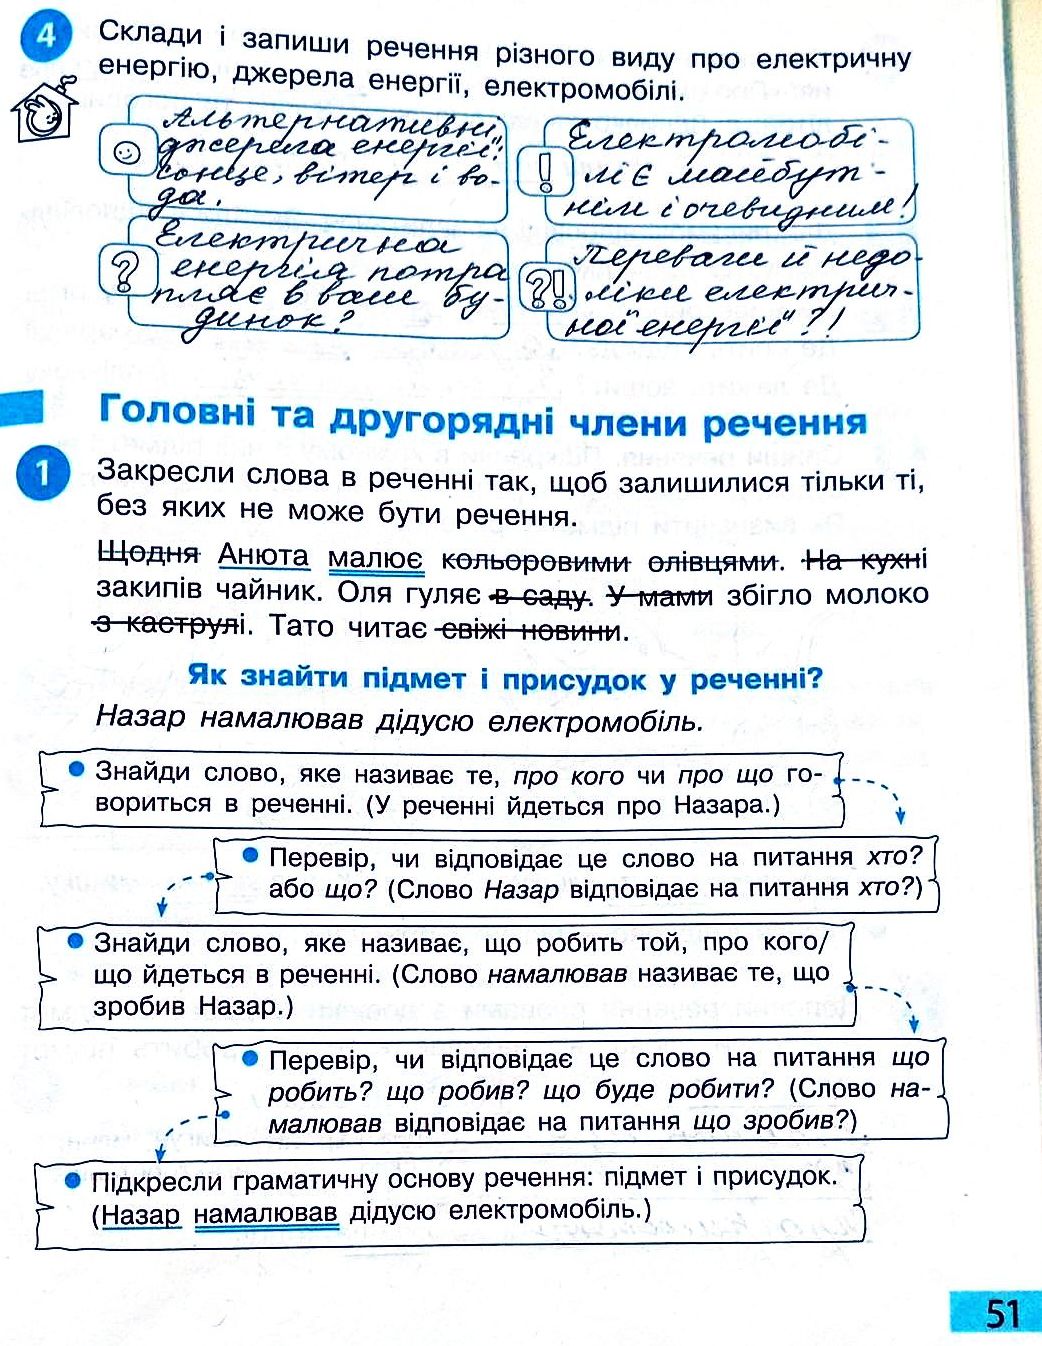 Сторінка 51 частина 2 гдз 3 клас робочий зошит українська мова Большакова